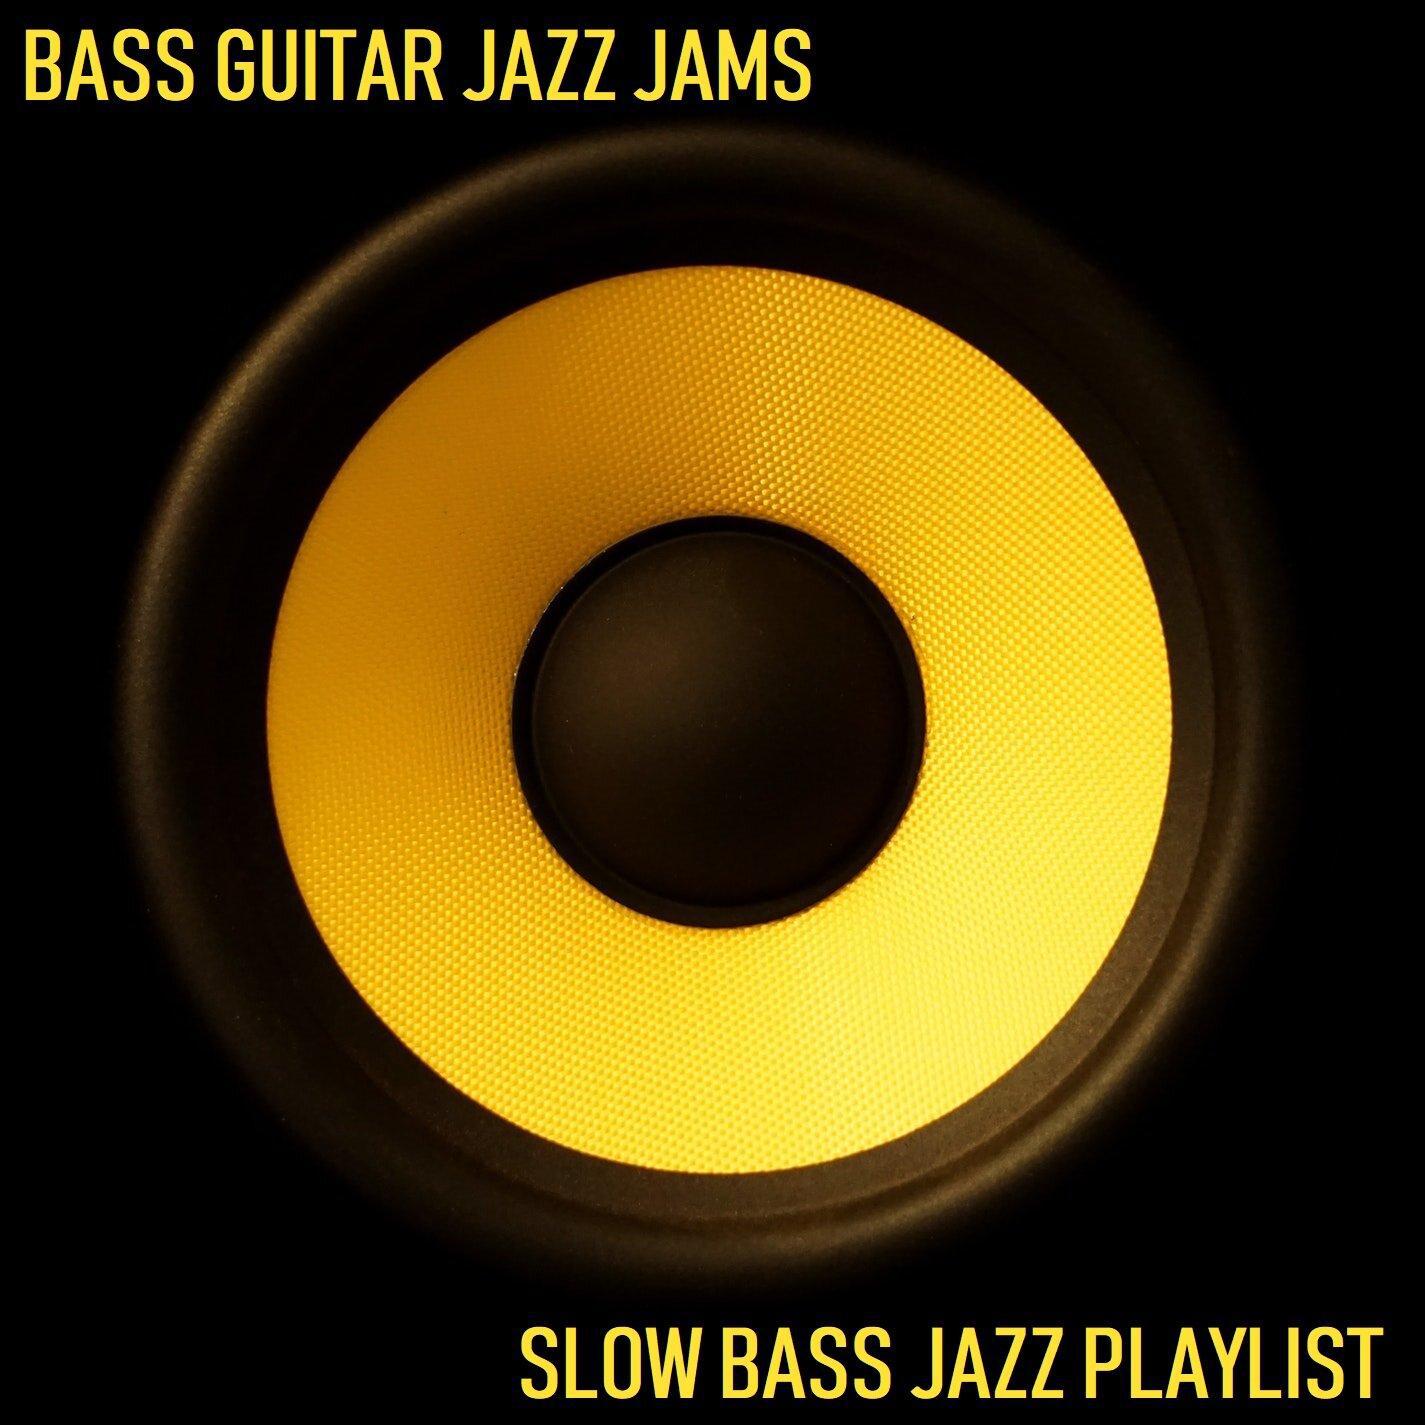 Slow Bass Jazz Playlist